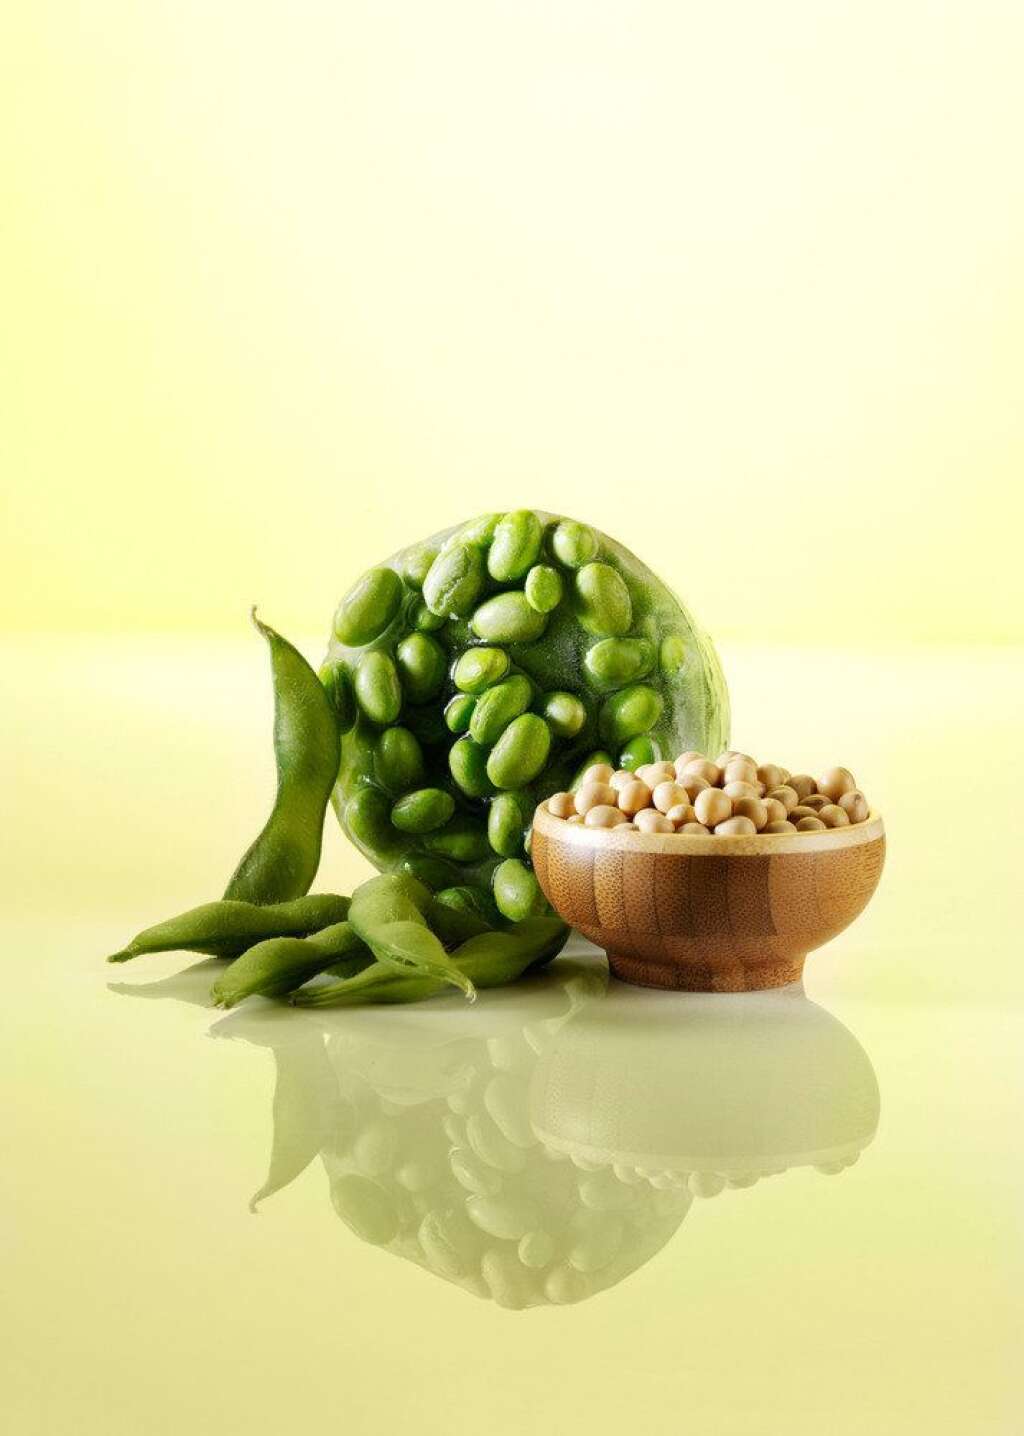 Edamame - Encore un aliment à découvrir absolument. Les fèves de soya fraîche, aussi appelées edamame, sont riches en protéines, mais contiennent aussi des phytoestrogènes, qui peuvent aider à la prévention de certains types de cancers (dont le cancer du sein).